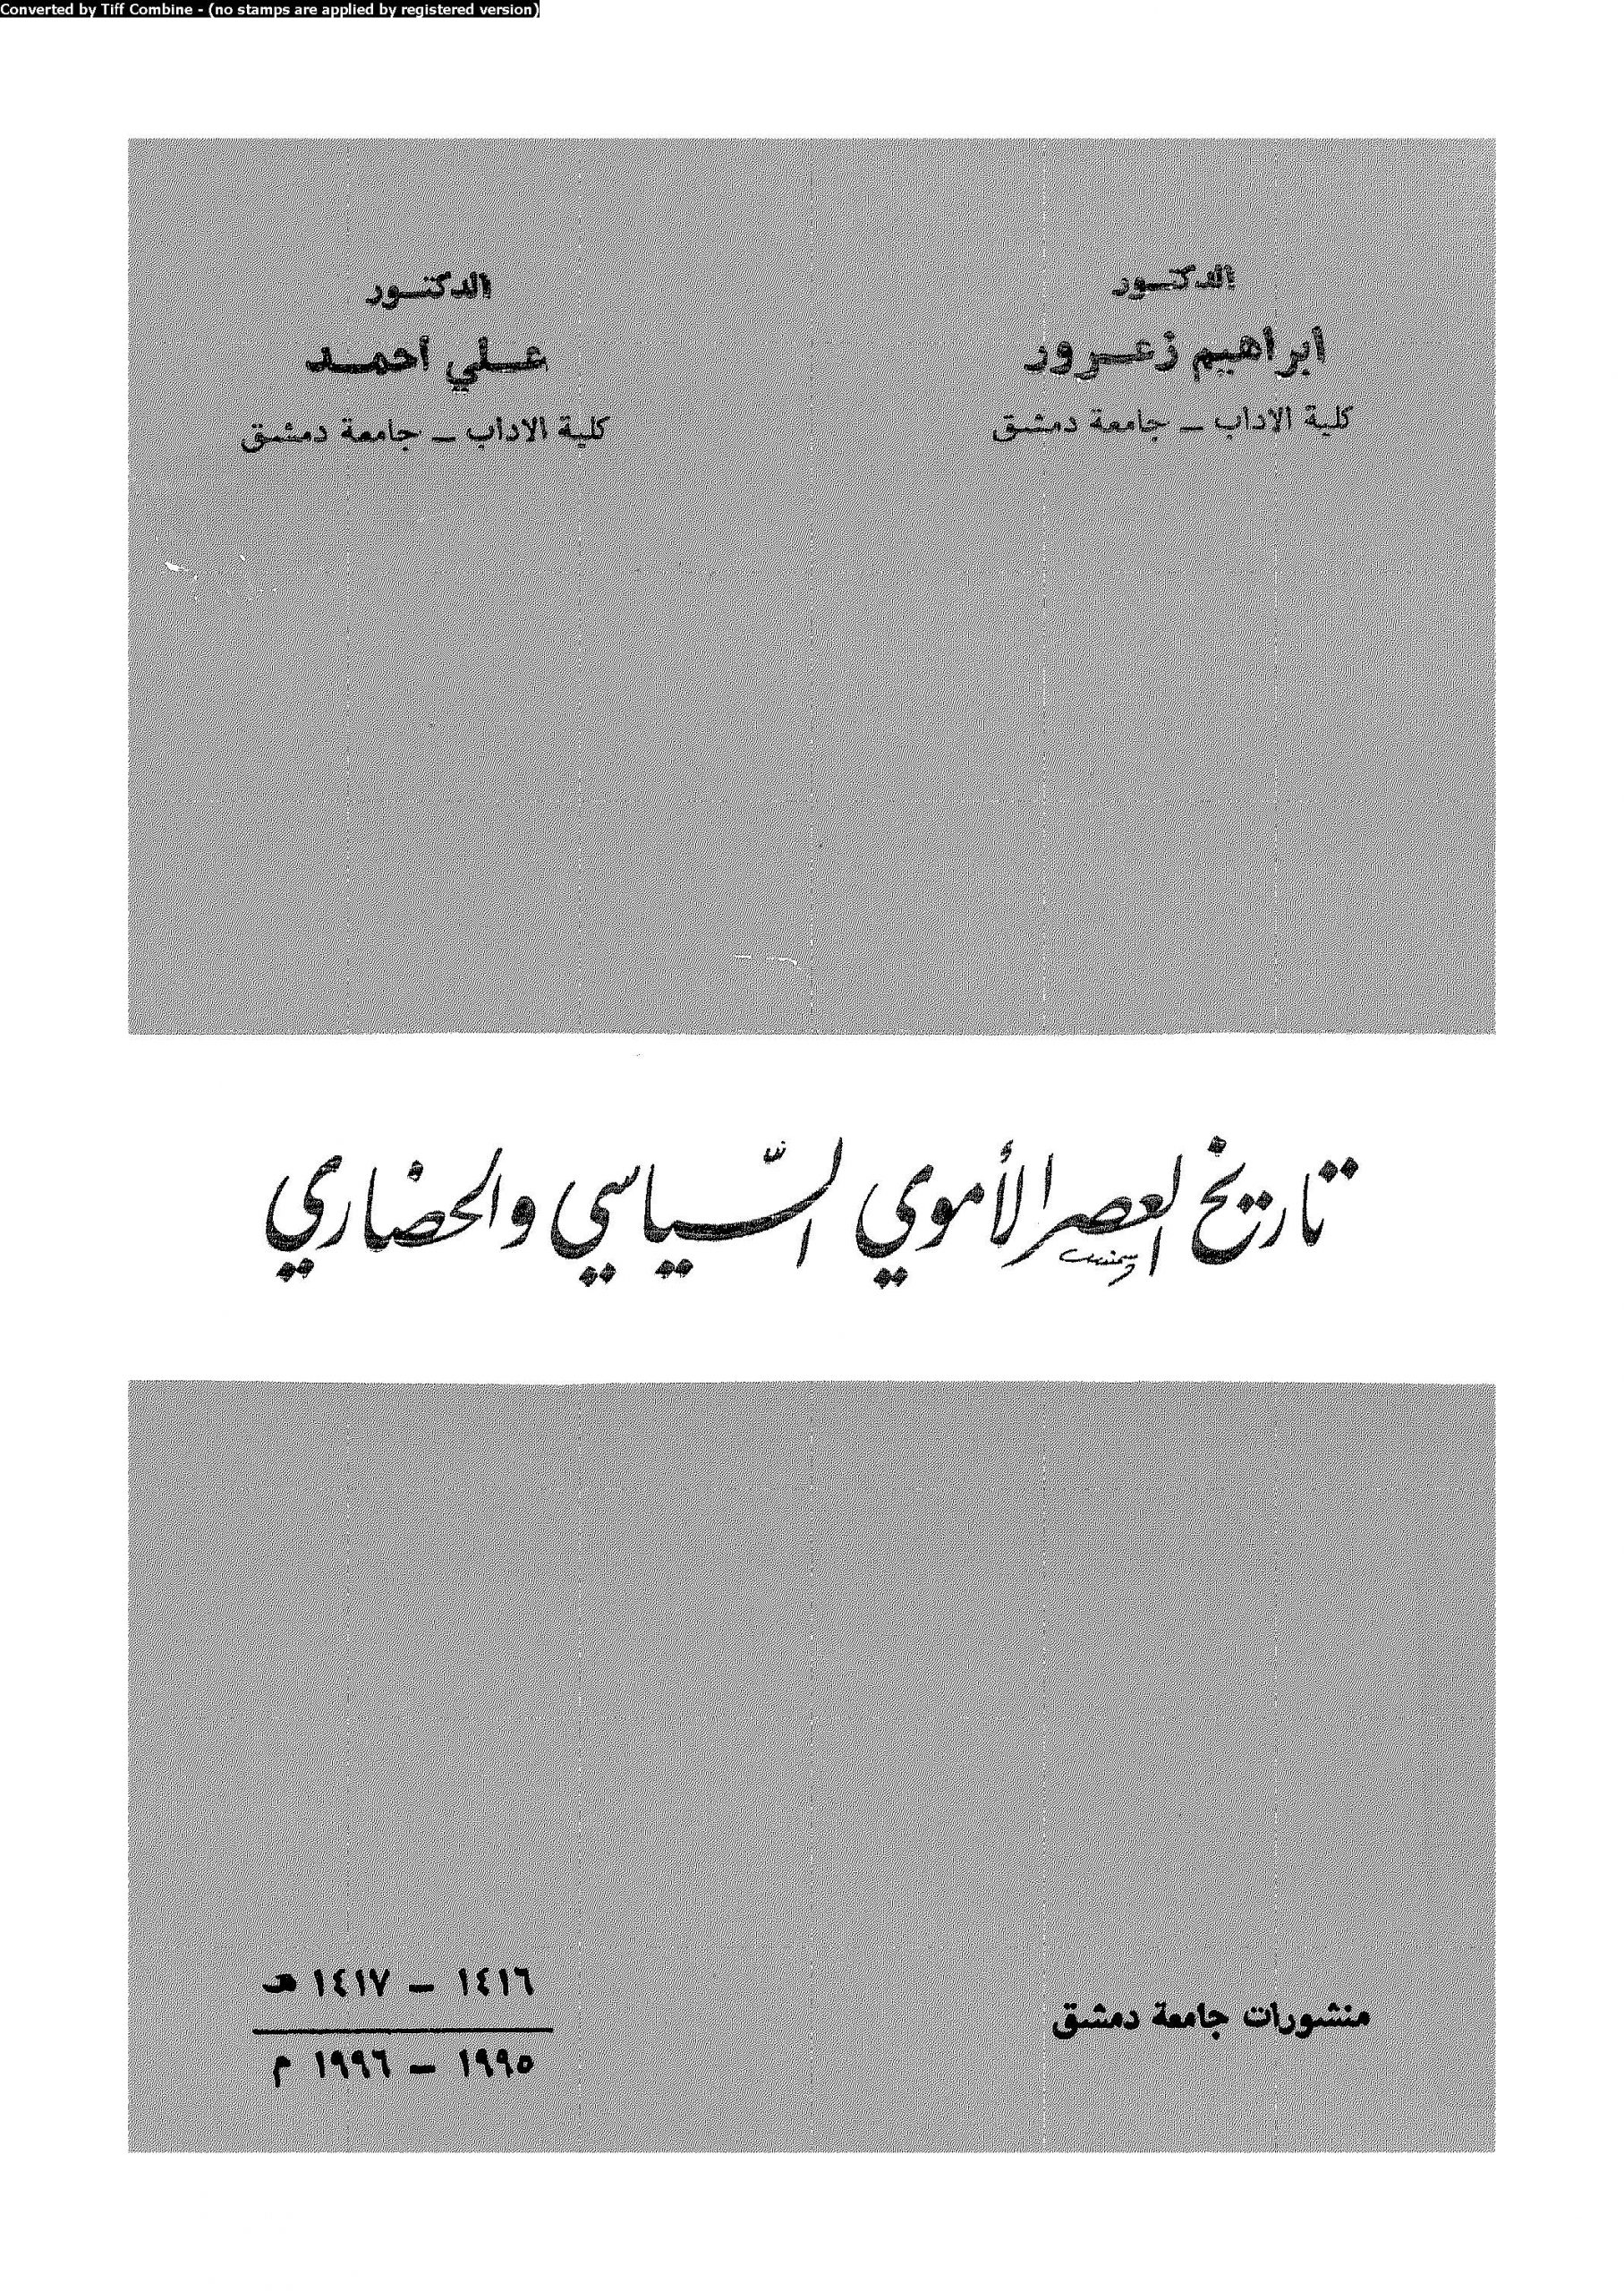 تحميل كتاب تاريخ العصر الأموي السياسي والحضاري pdf إبراهيم زعرور وعلي أحمد 